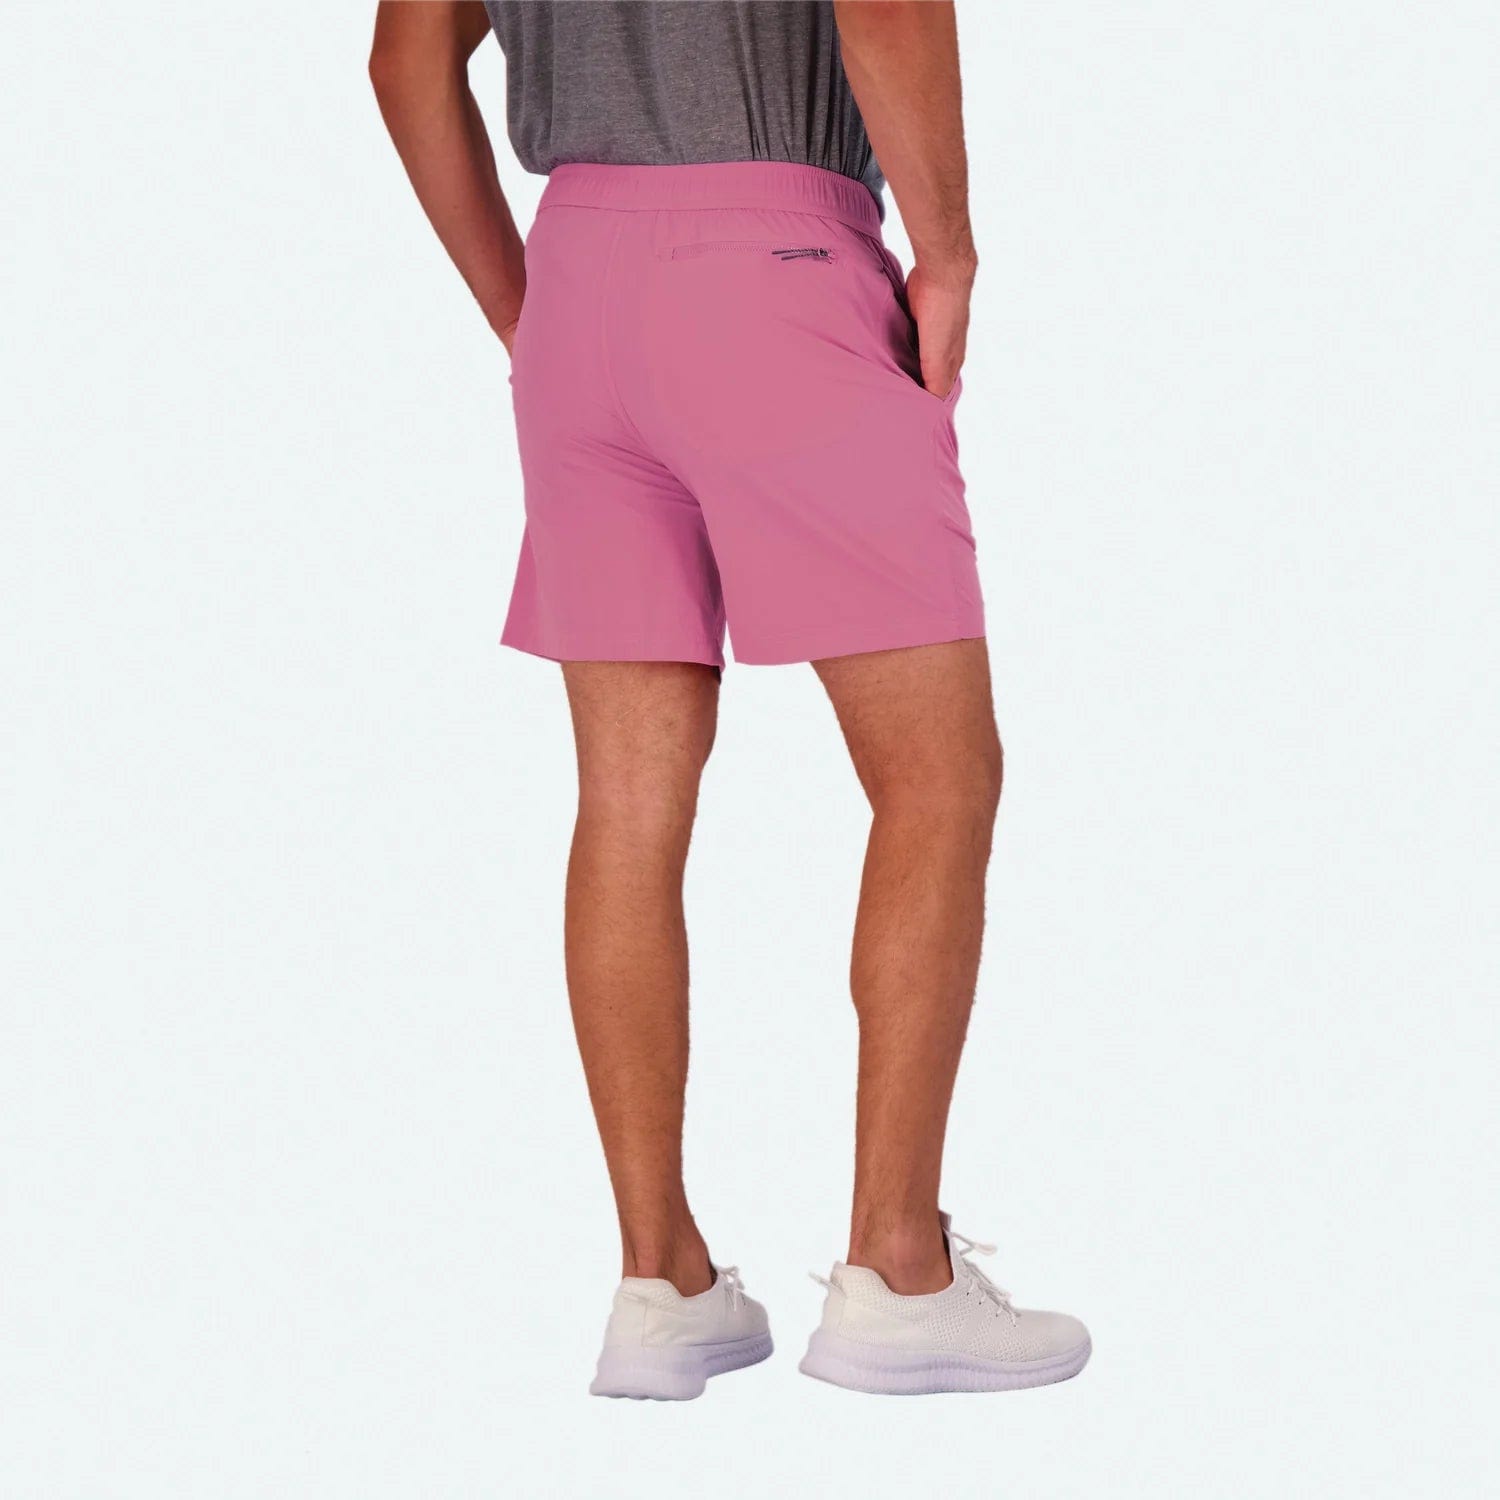 Nike Men's Shorts - Pink - S